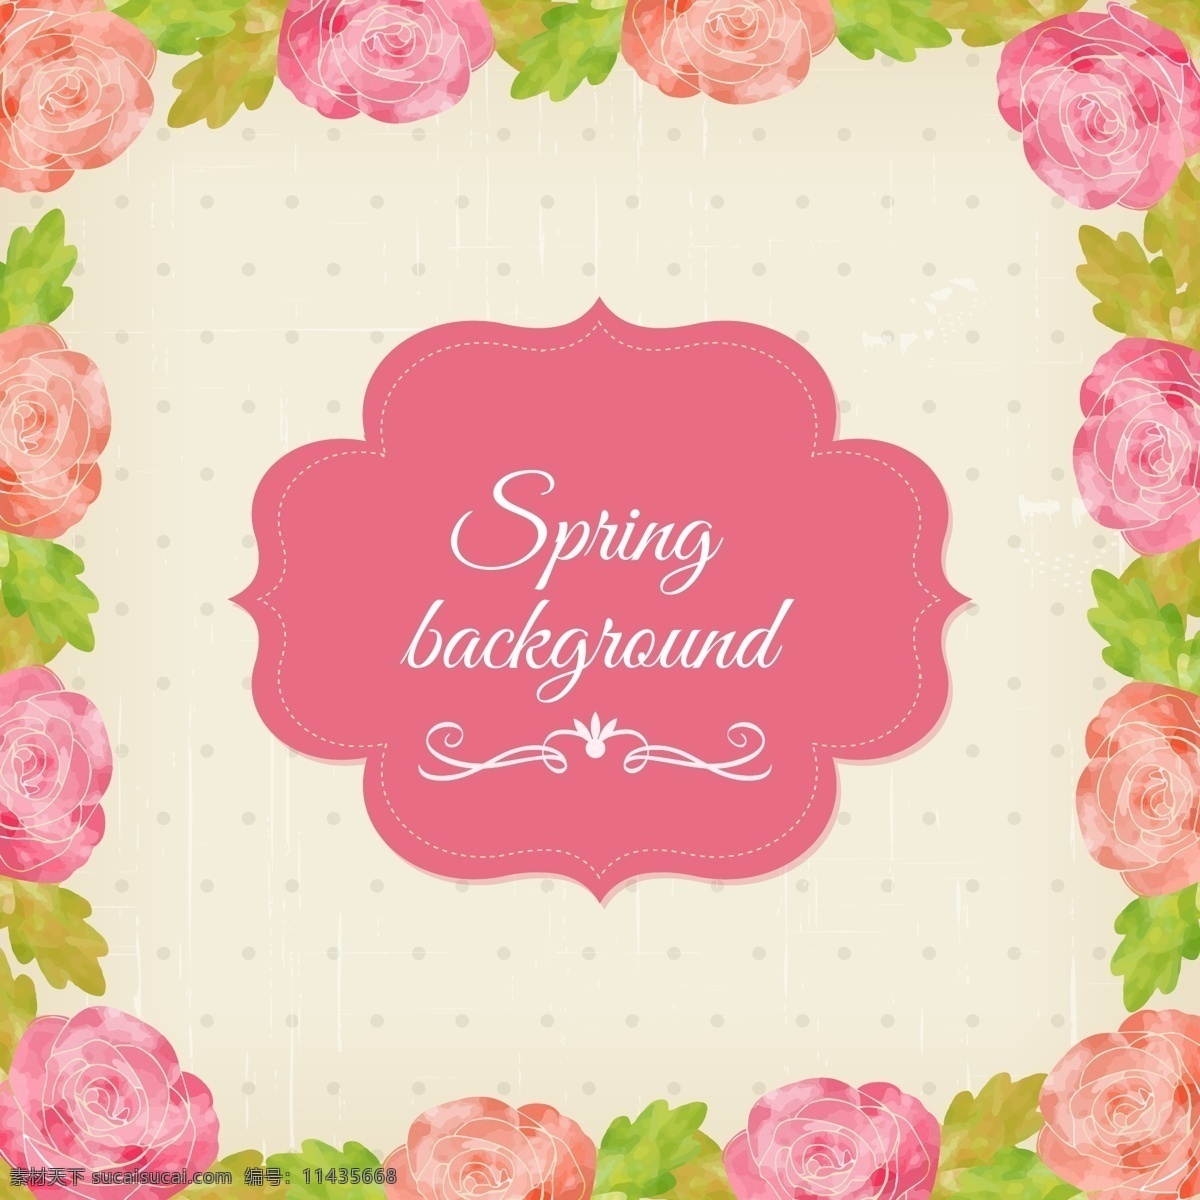 春季 粉色 花卉 标签 背景 花纹 玫瑰花 矢量图 水玉点 花纹花边